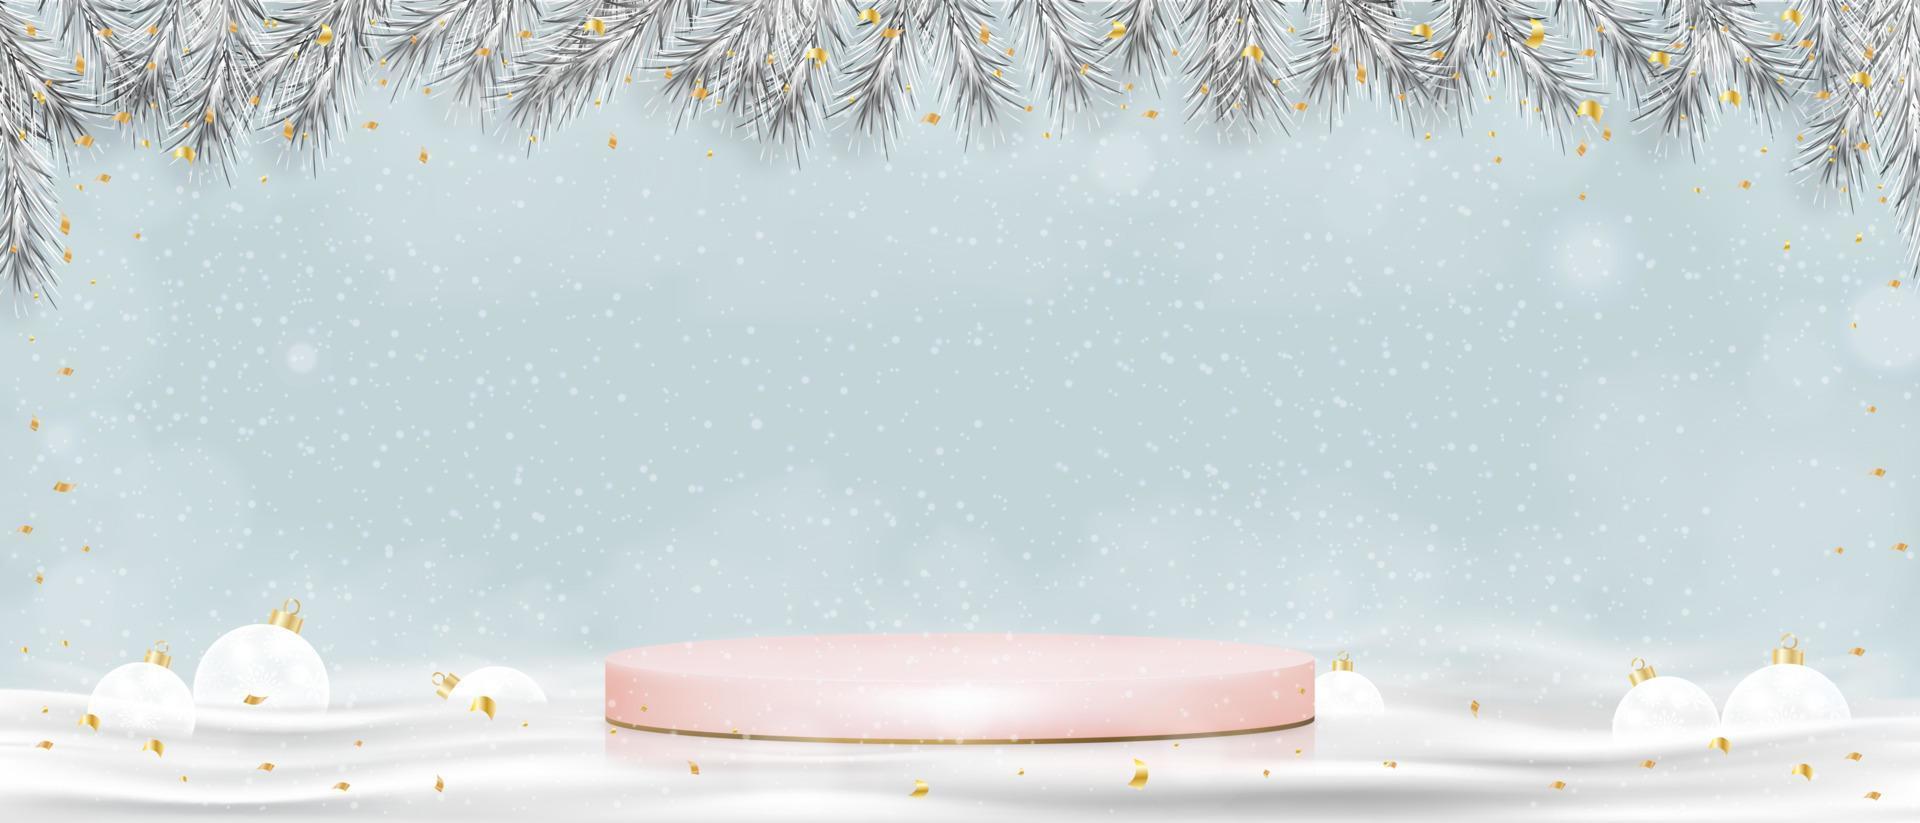 weihnachtshintergrund mit winterszene, 3d-display rosa podium mit weihnachtsdekoration, vektor-schaufensterständer mit schneien auf blauem himmelwandhintergrund, luxusdesign für das neue jahr 2023 vektor